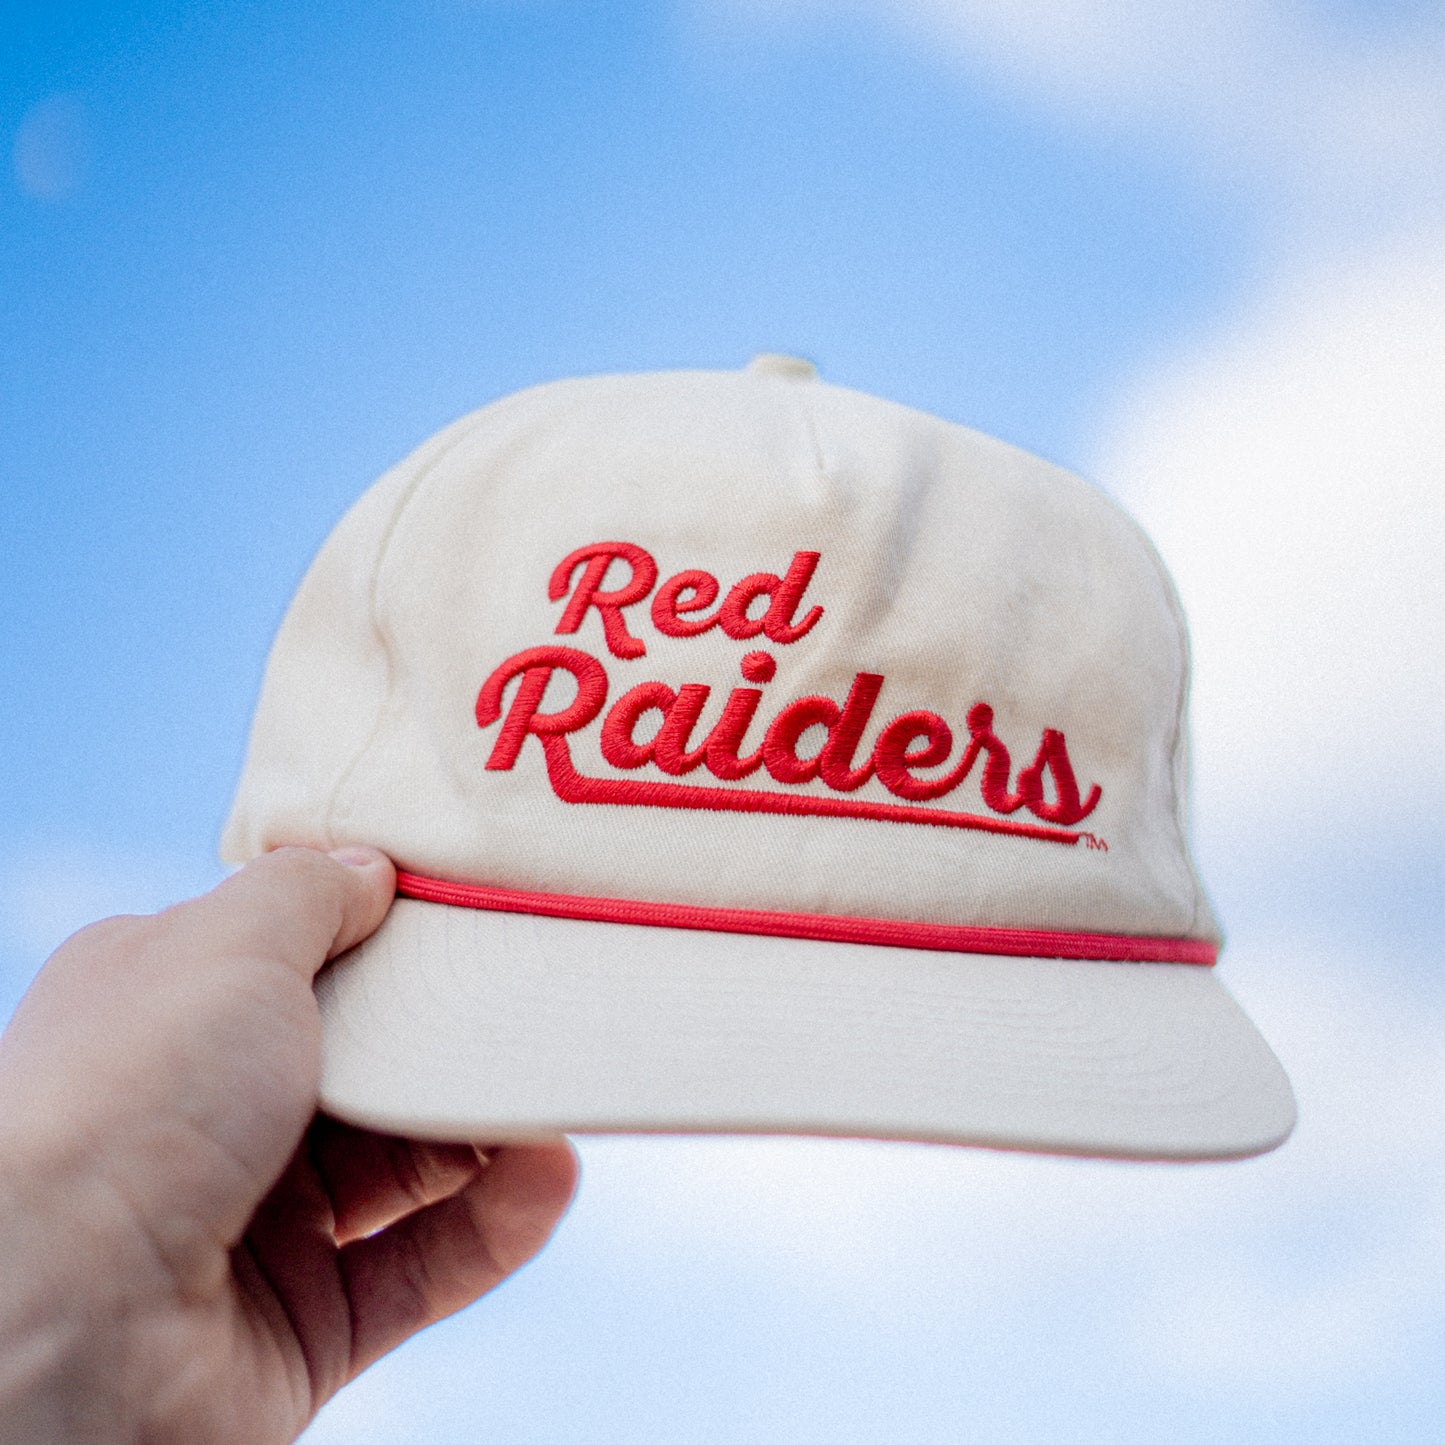 "The Die Hard" Retro Red Raiders Rope Hat